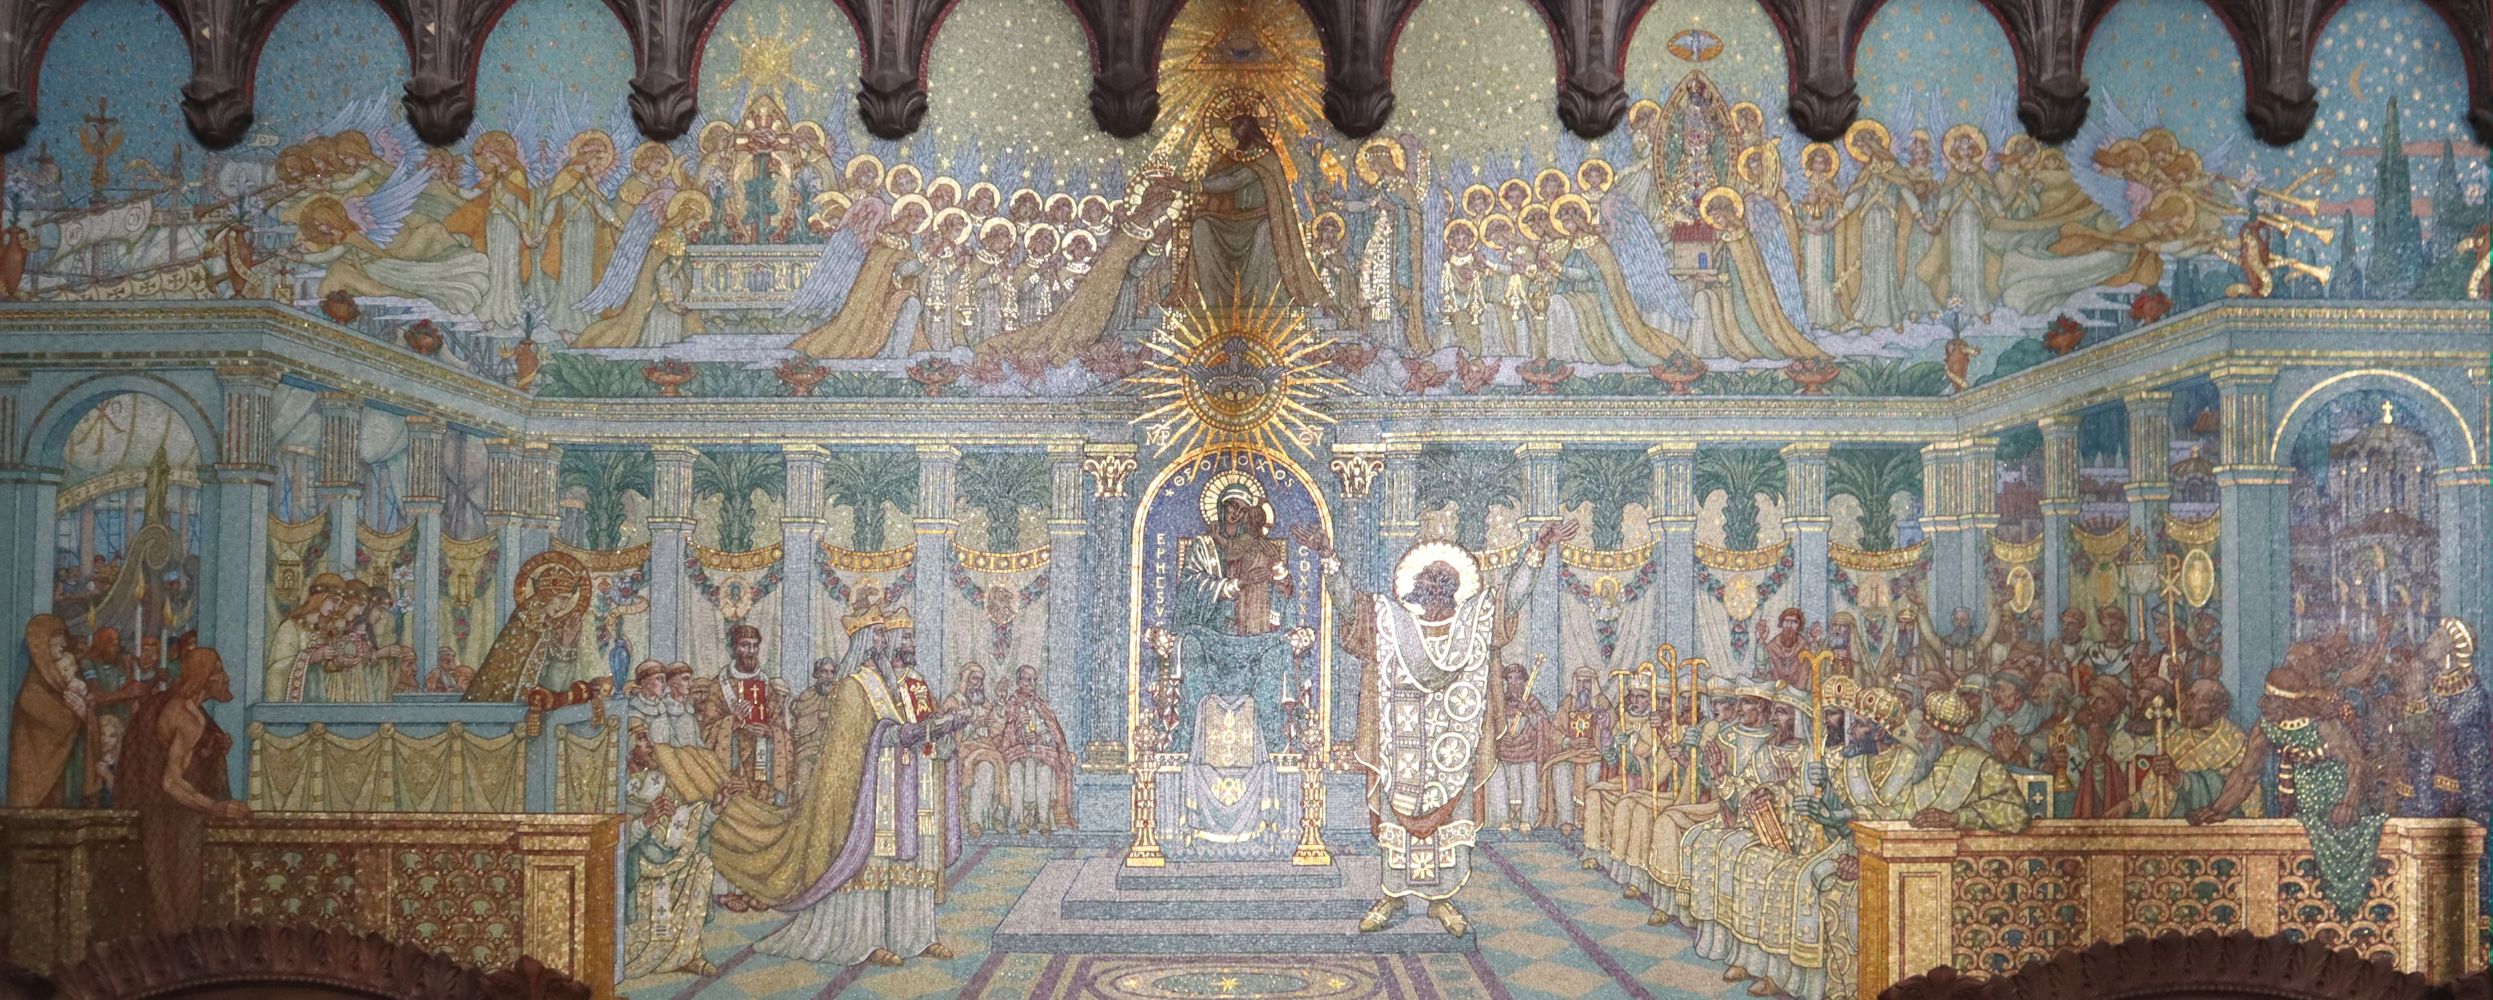 Mosaik: Photinus vor Maria, rechts weitere spätere Bischöfe von Lyon, links Glaubensboten, ermutigt durch Johannes auf der Kanzel und Polykarp von Smyrna mit Evangelienbuch, in der Kirche Notre-Dame de Fourvière in Lyon